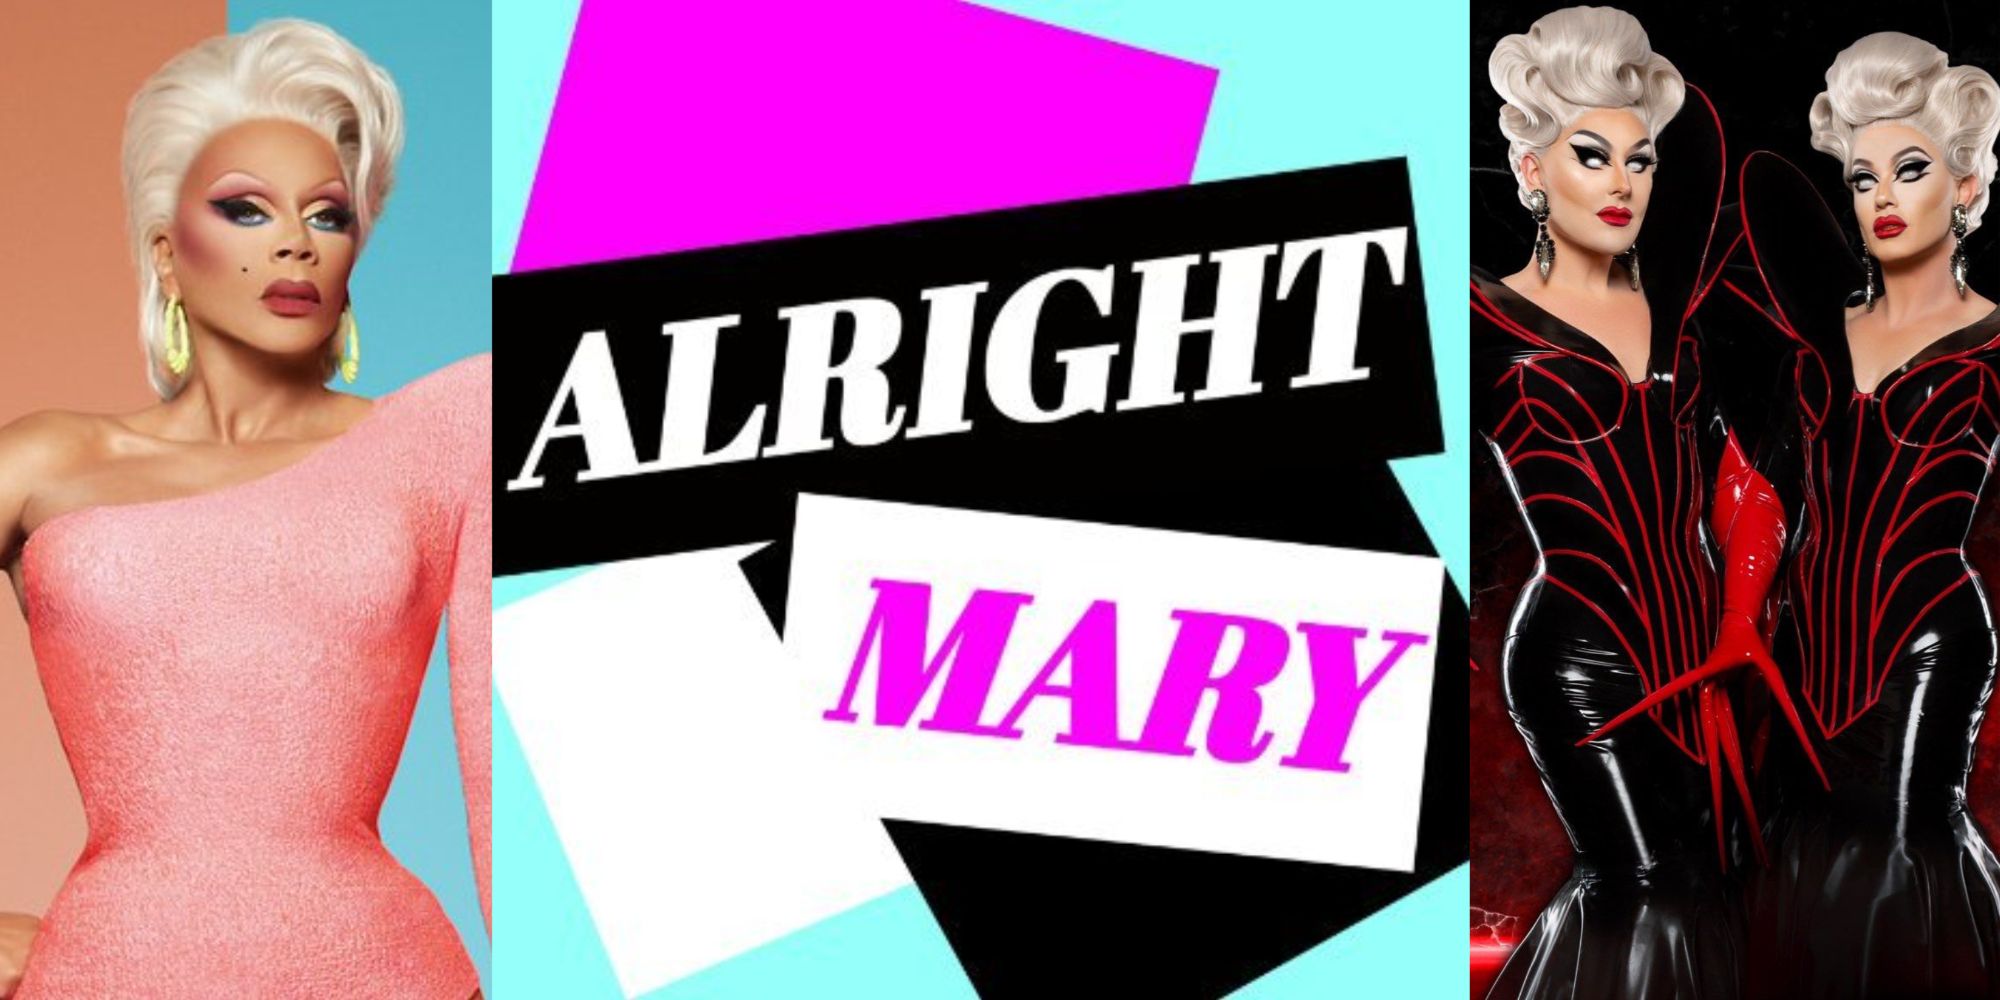 Alright-Mary